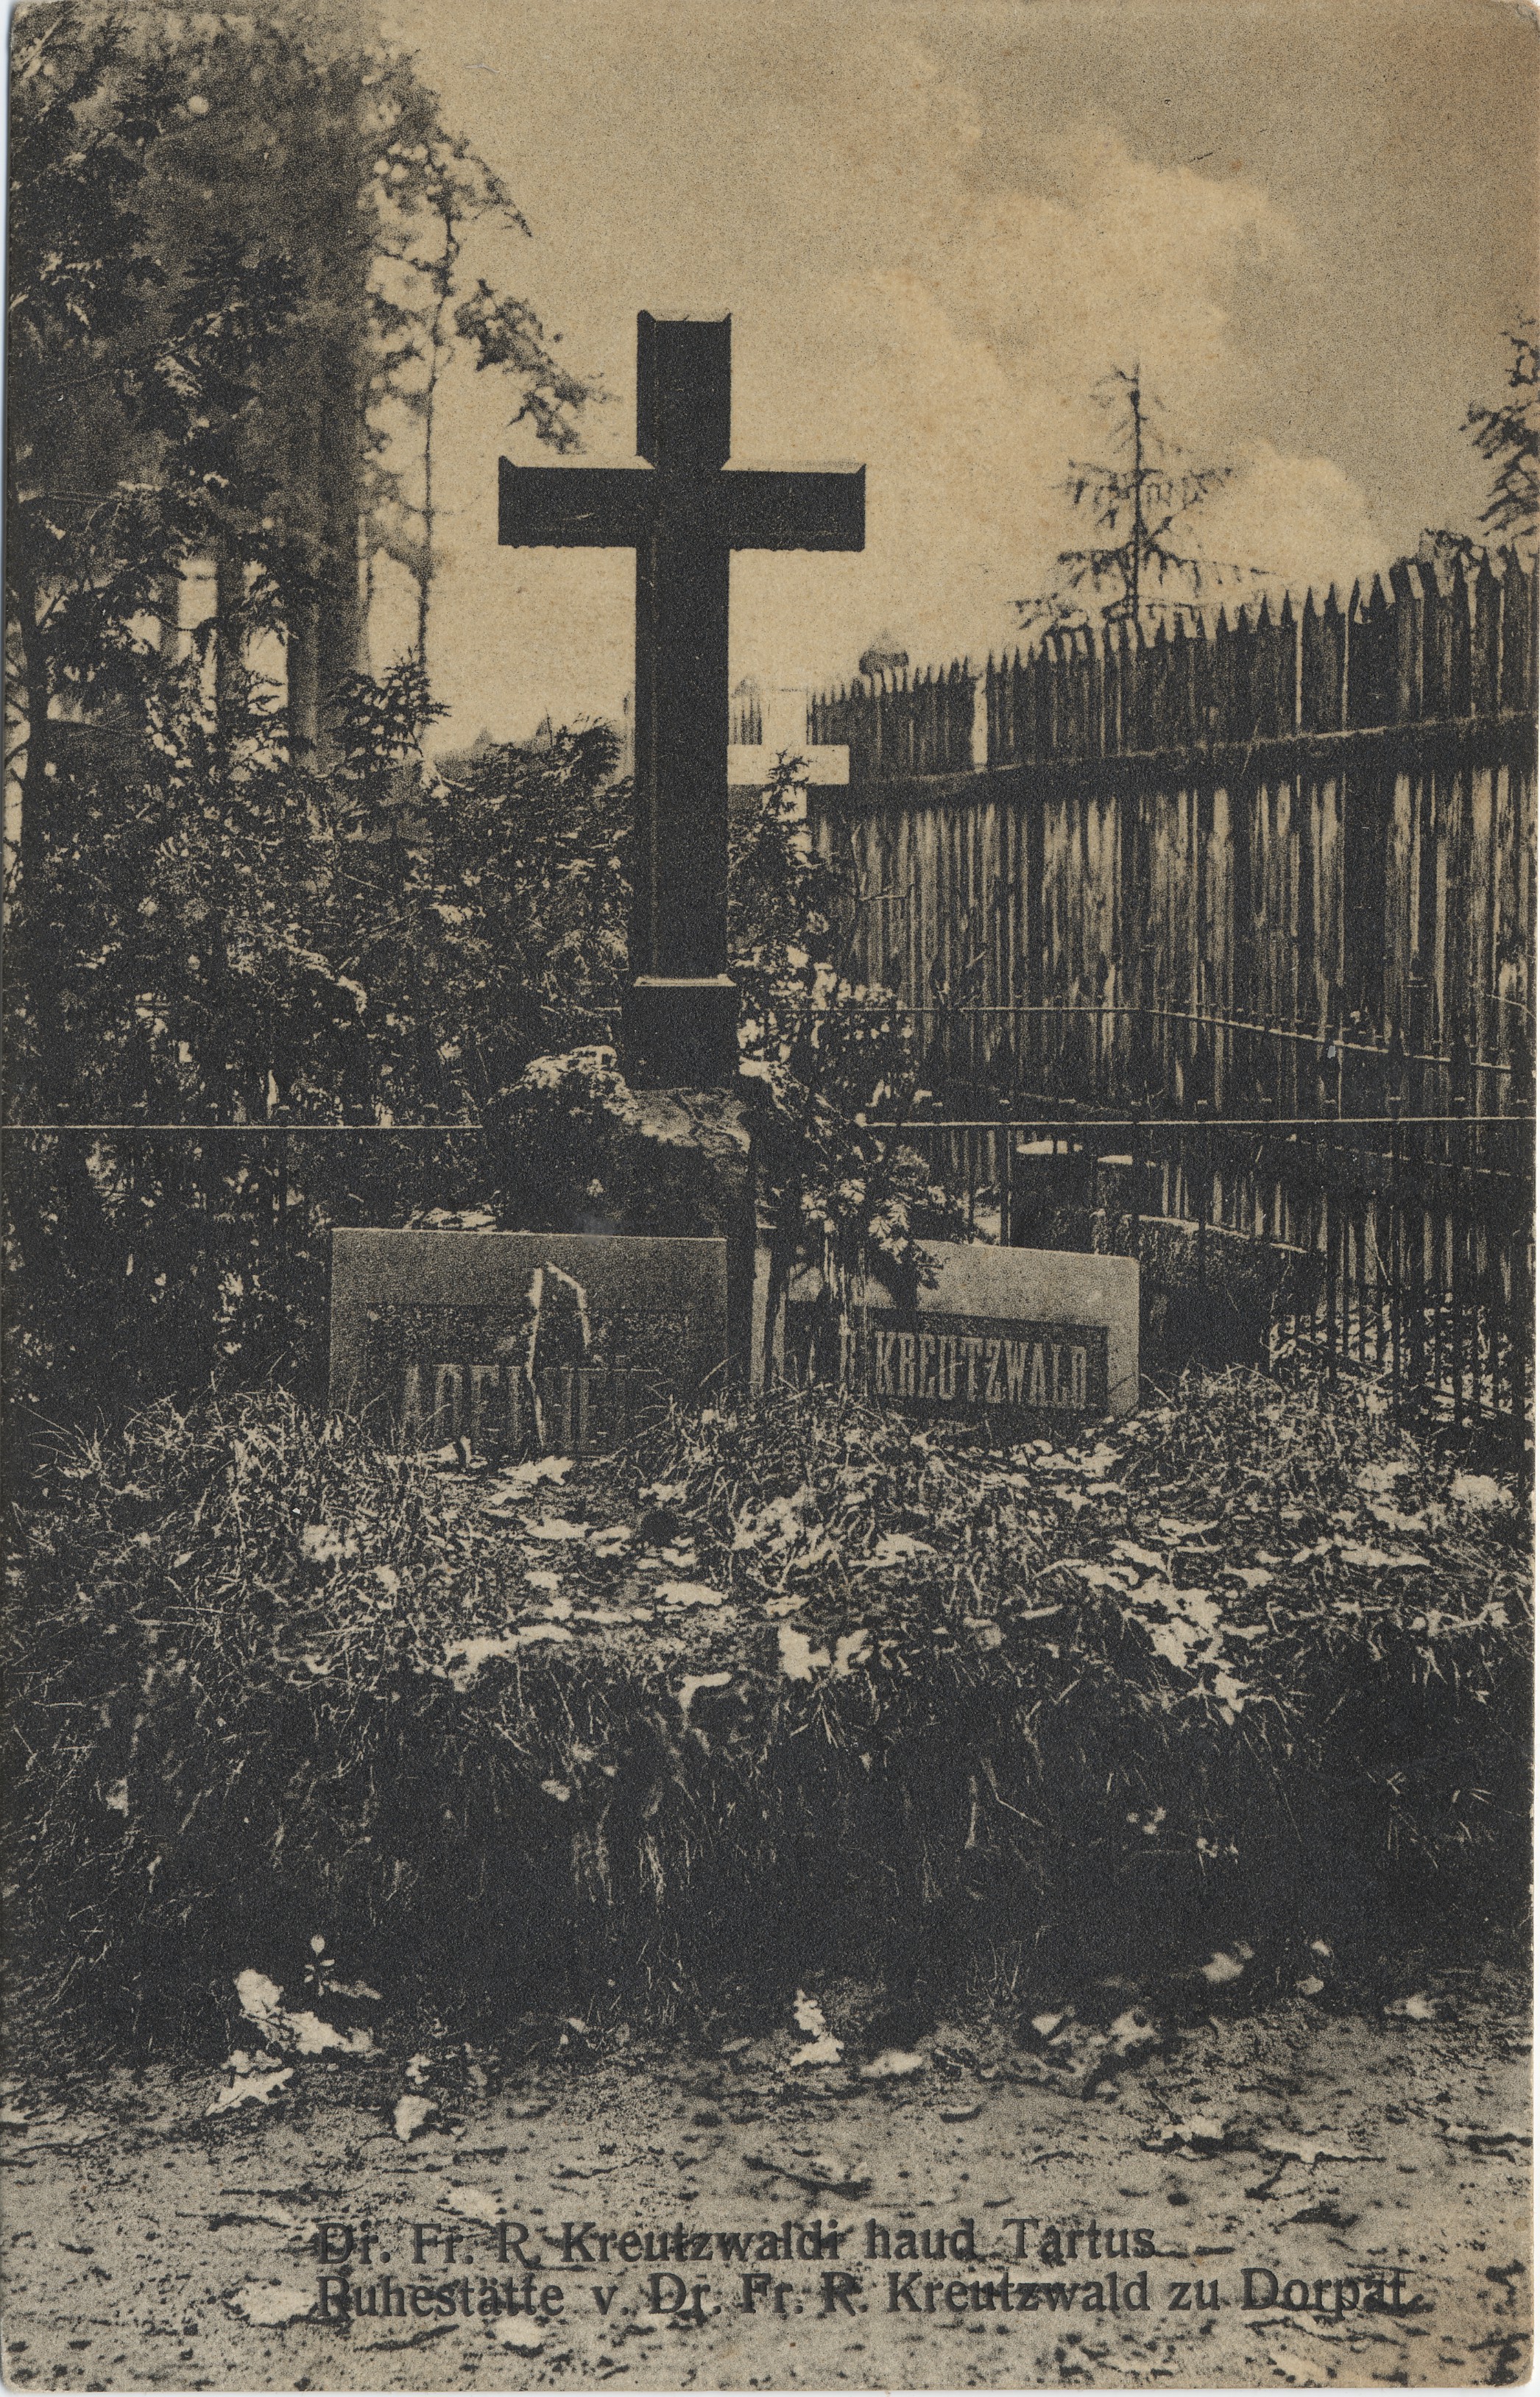 Dr. Fr. R. Kreutzwald's grave in Tartu : Ruhestätte v. Dr. Fr. R. Kreutzwald to Dorpat